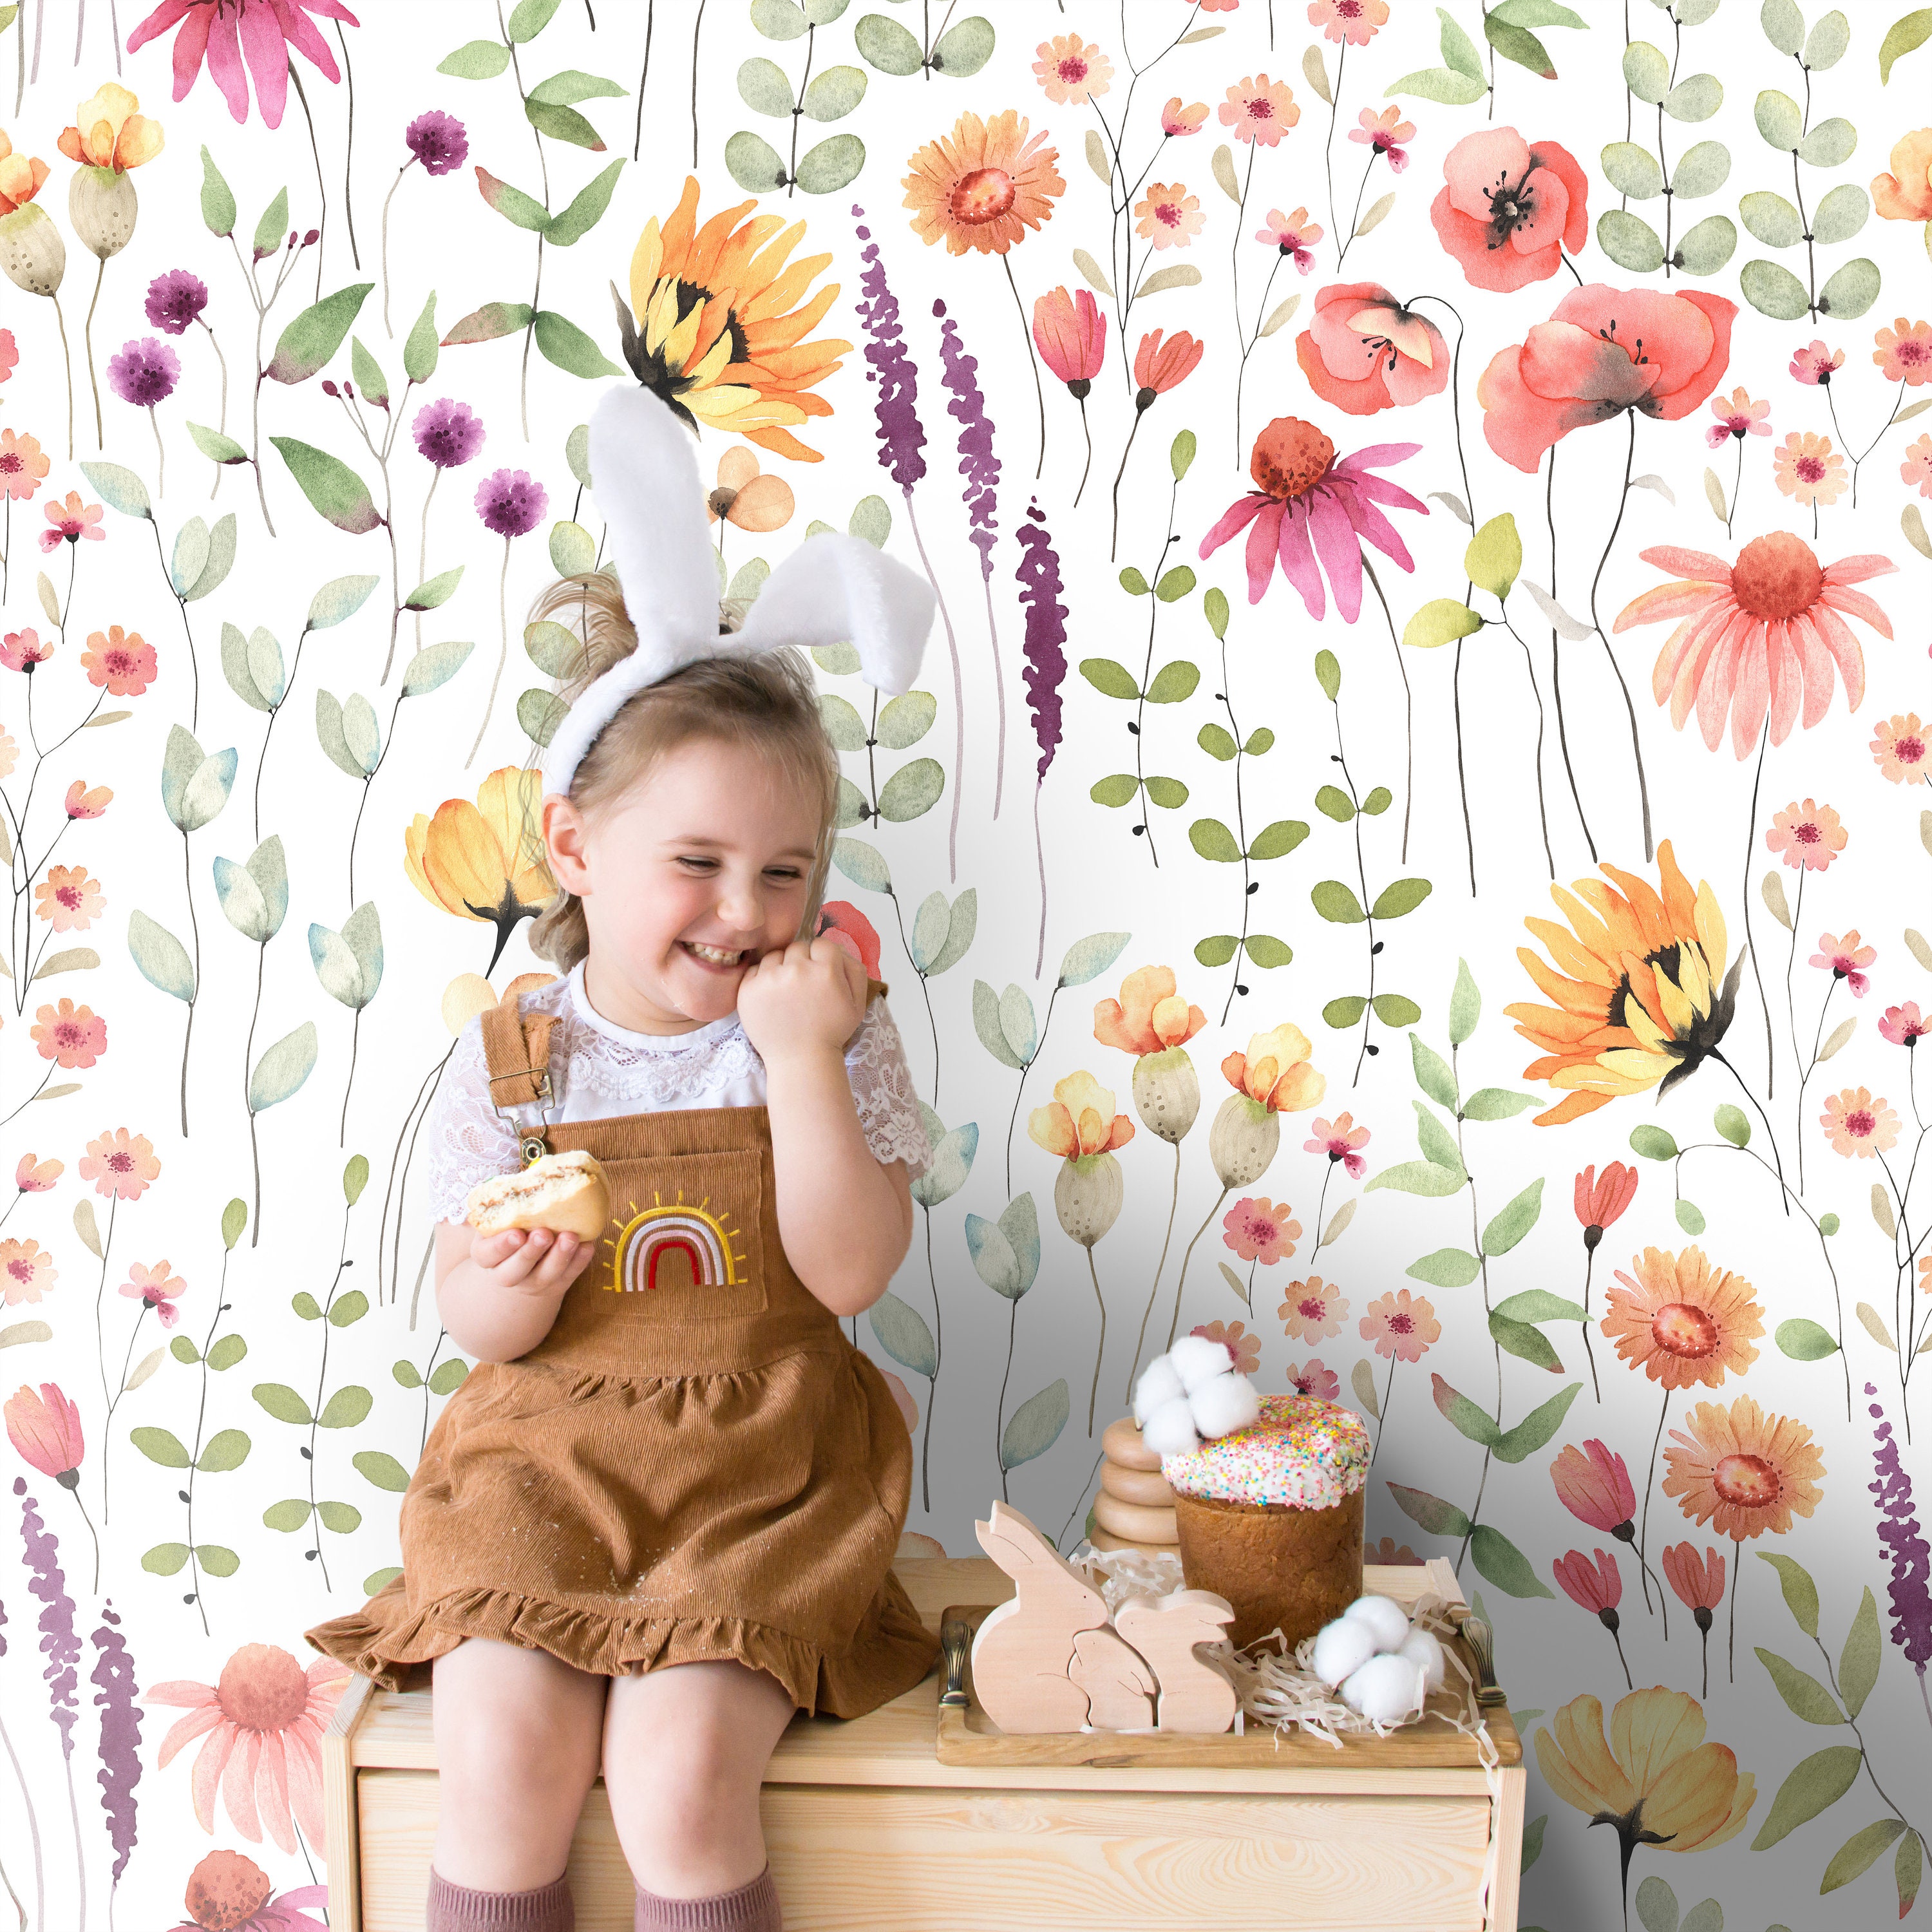 Kids Floral Gardens with Butterflies Wallpaper Mural • Wallmur®